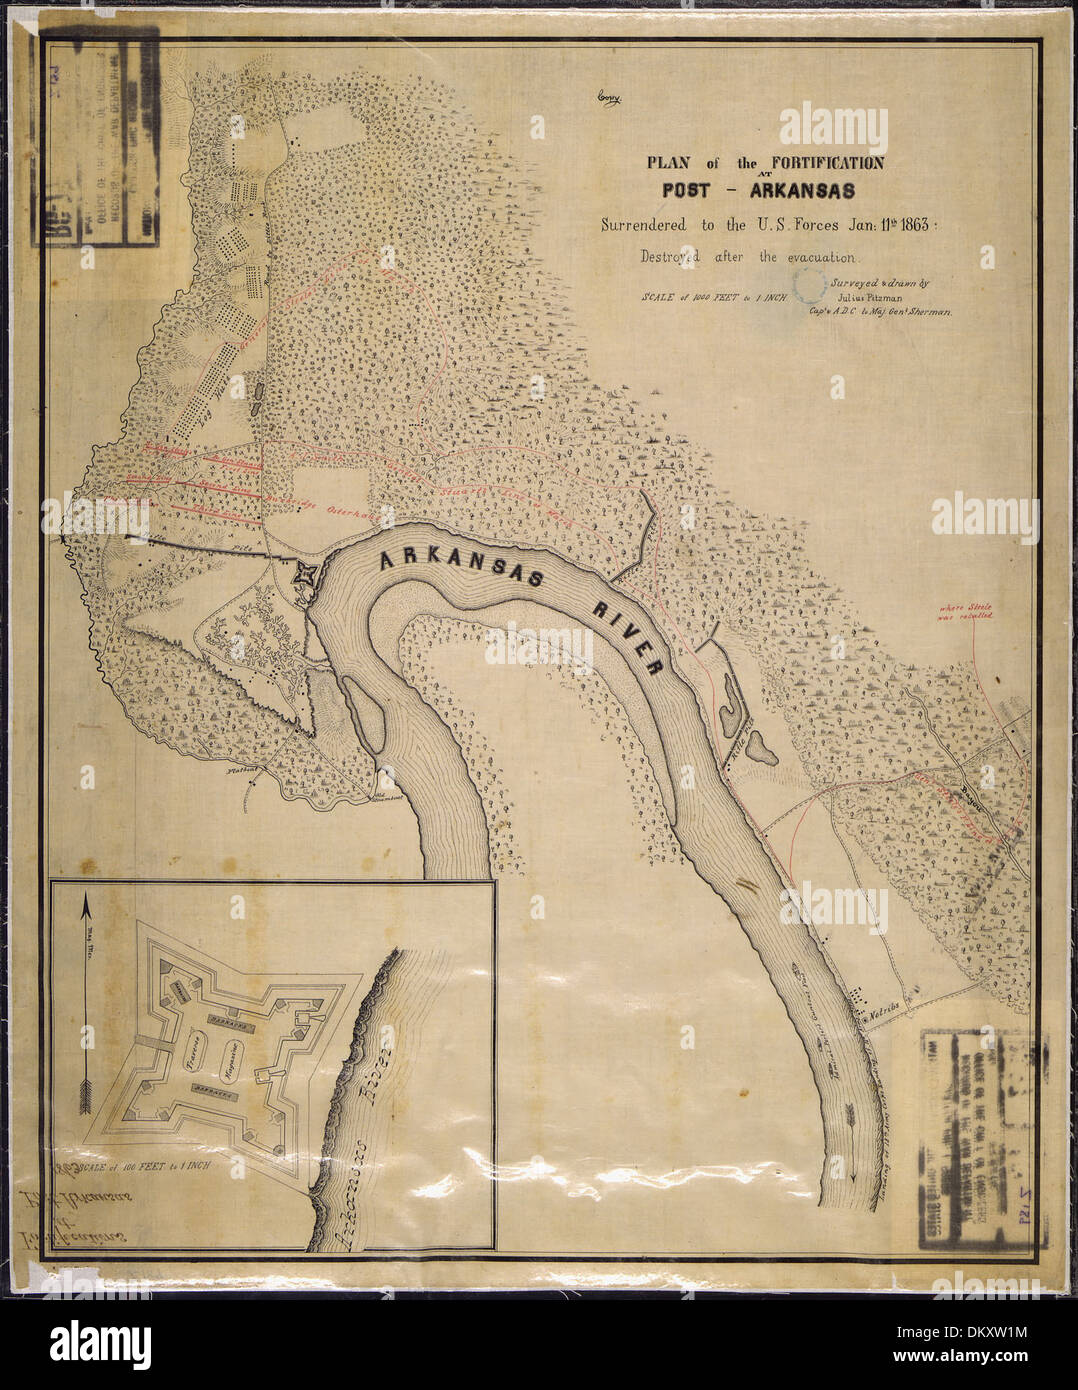 (Mappa e inset massa) piano di fortificazione (Fort Hindman) presso Post, Arkansas, consegnato agli Stati Uniti Forze... 305724 Foto Stock